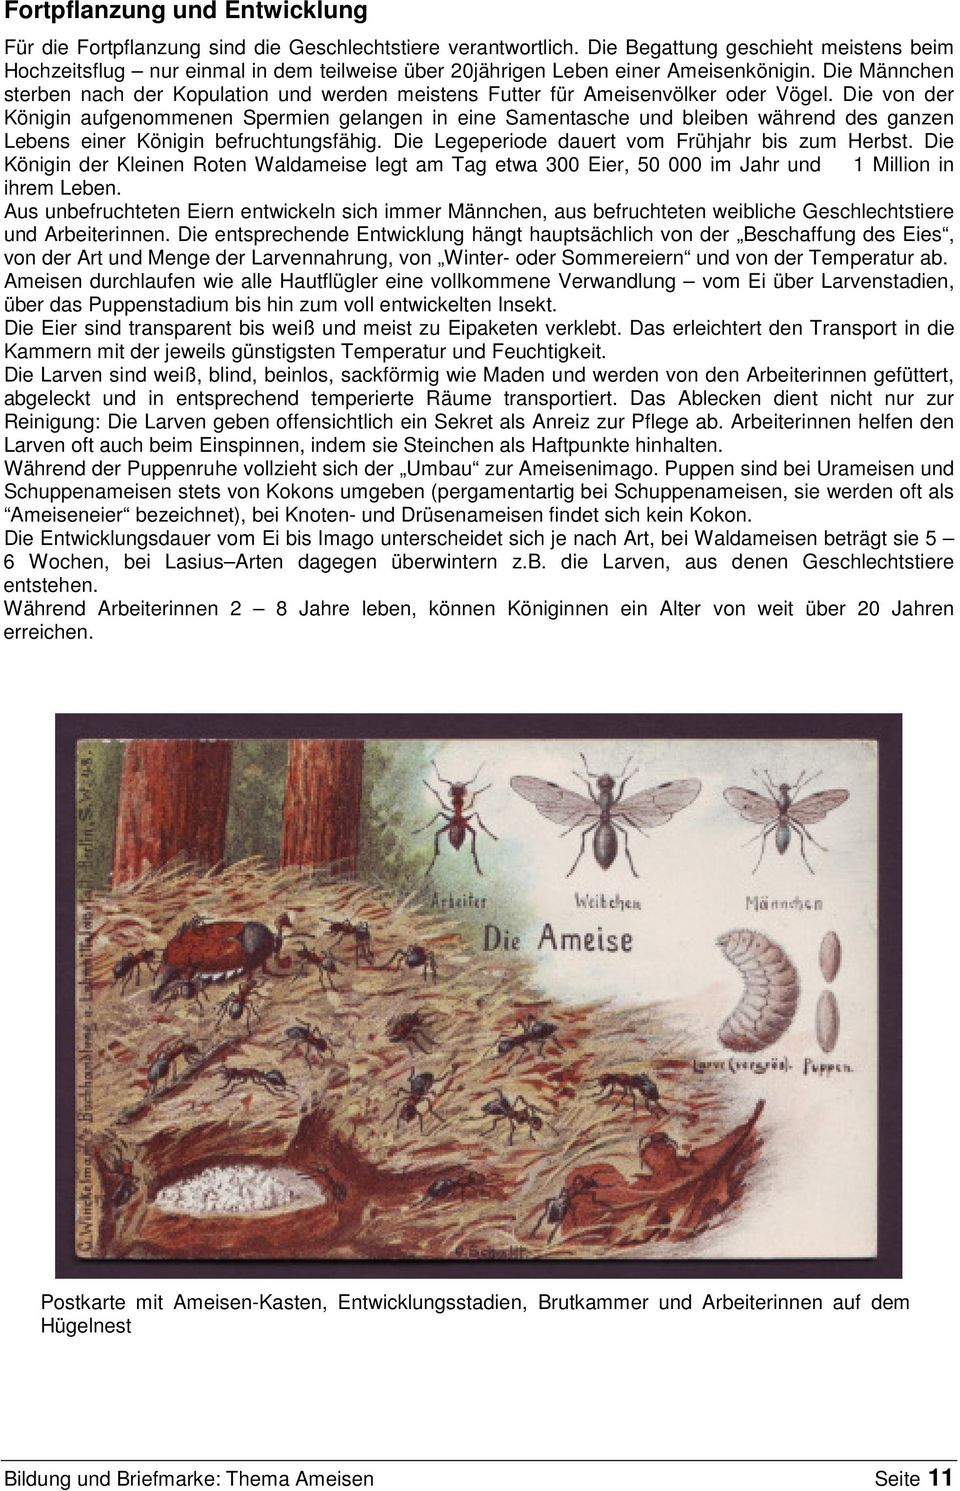 Die Männchen sterben nach der Kopulation und werden meistens Futter für Ameisenvölker oder Vögel.